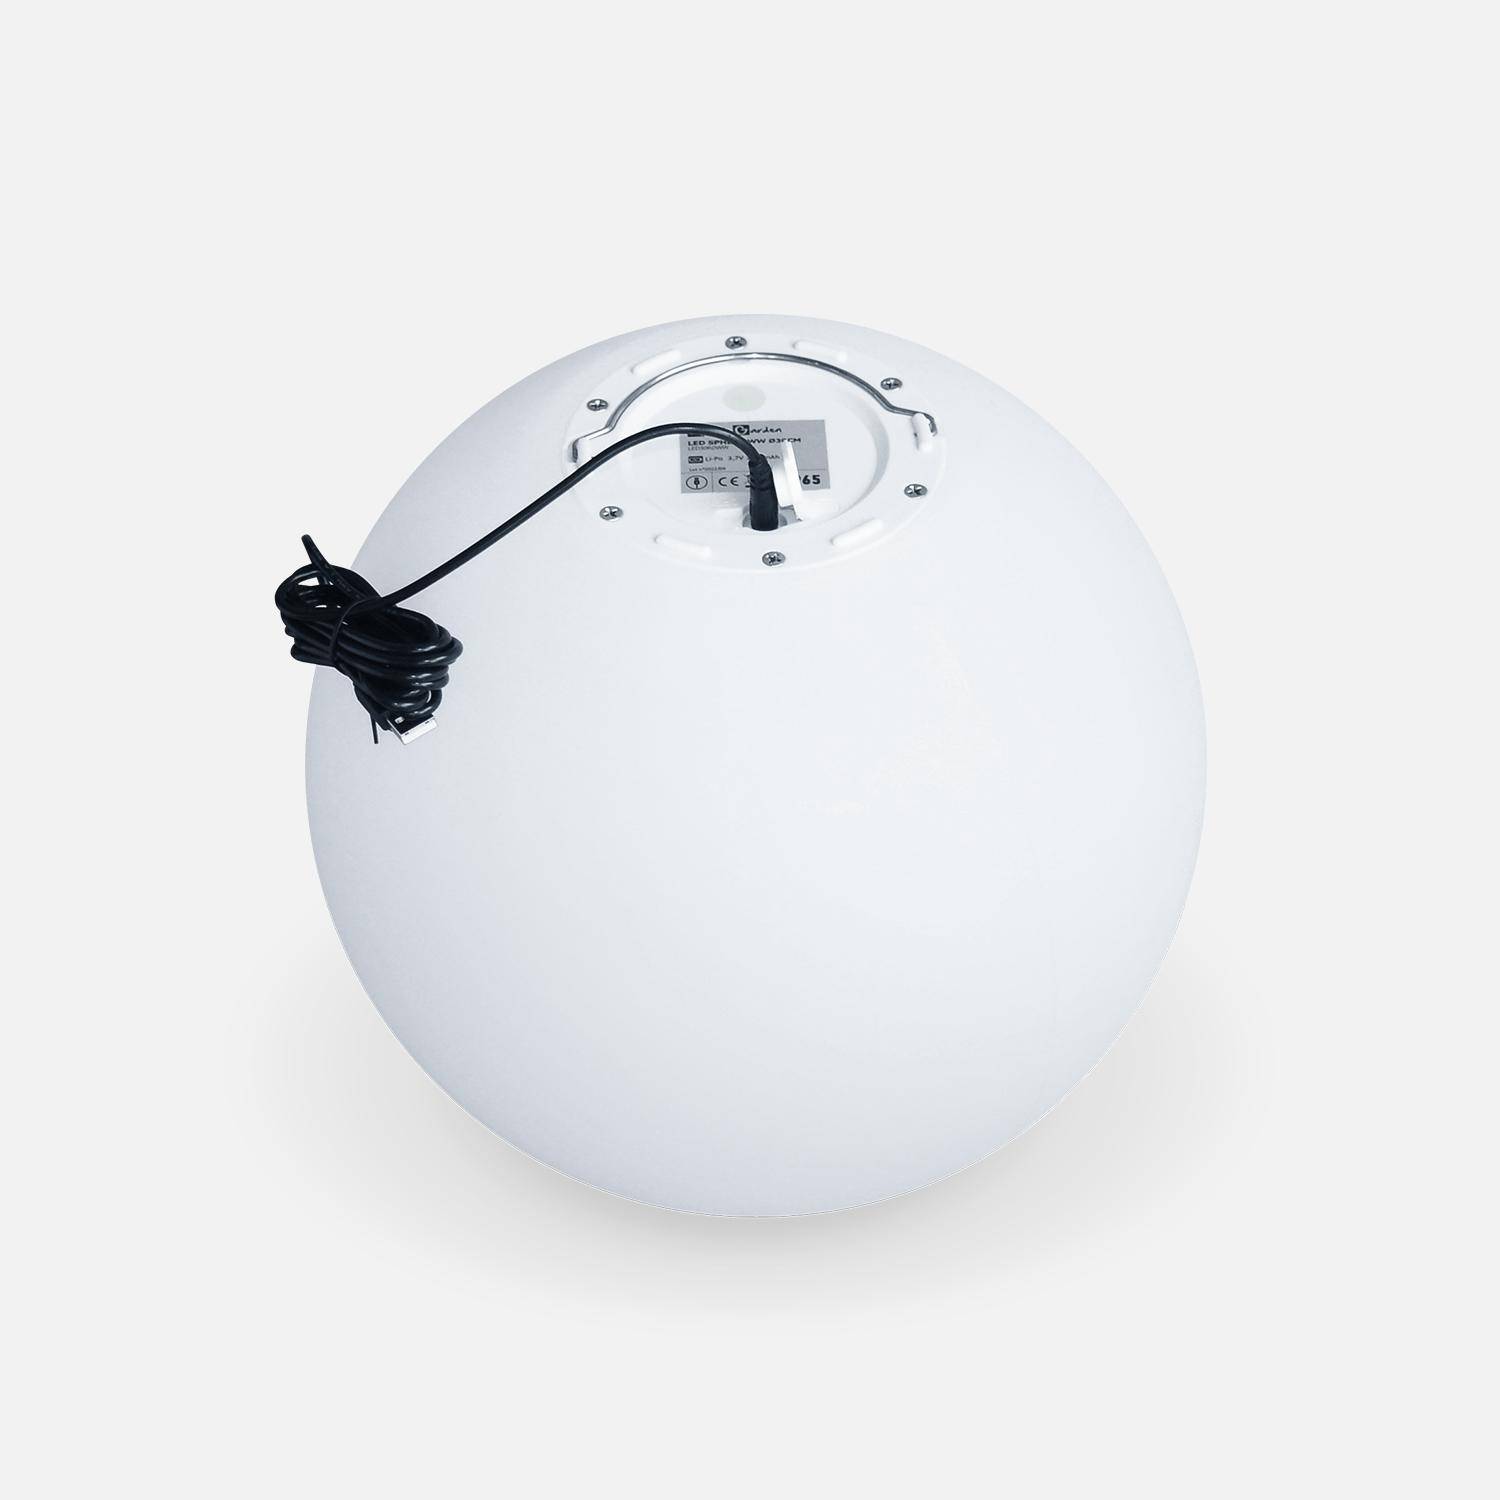 Boule LED 50cm – Sphère décorative lumineuse, Ø50cm, blanc chaud, commande à distance Photo4